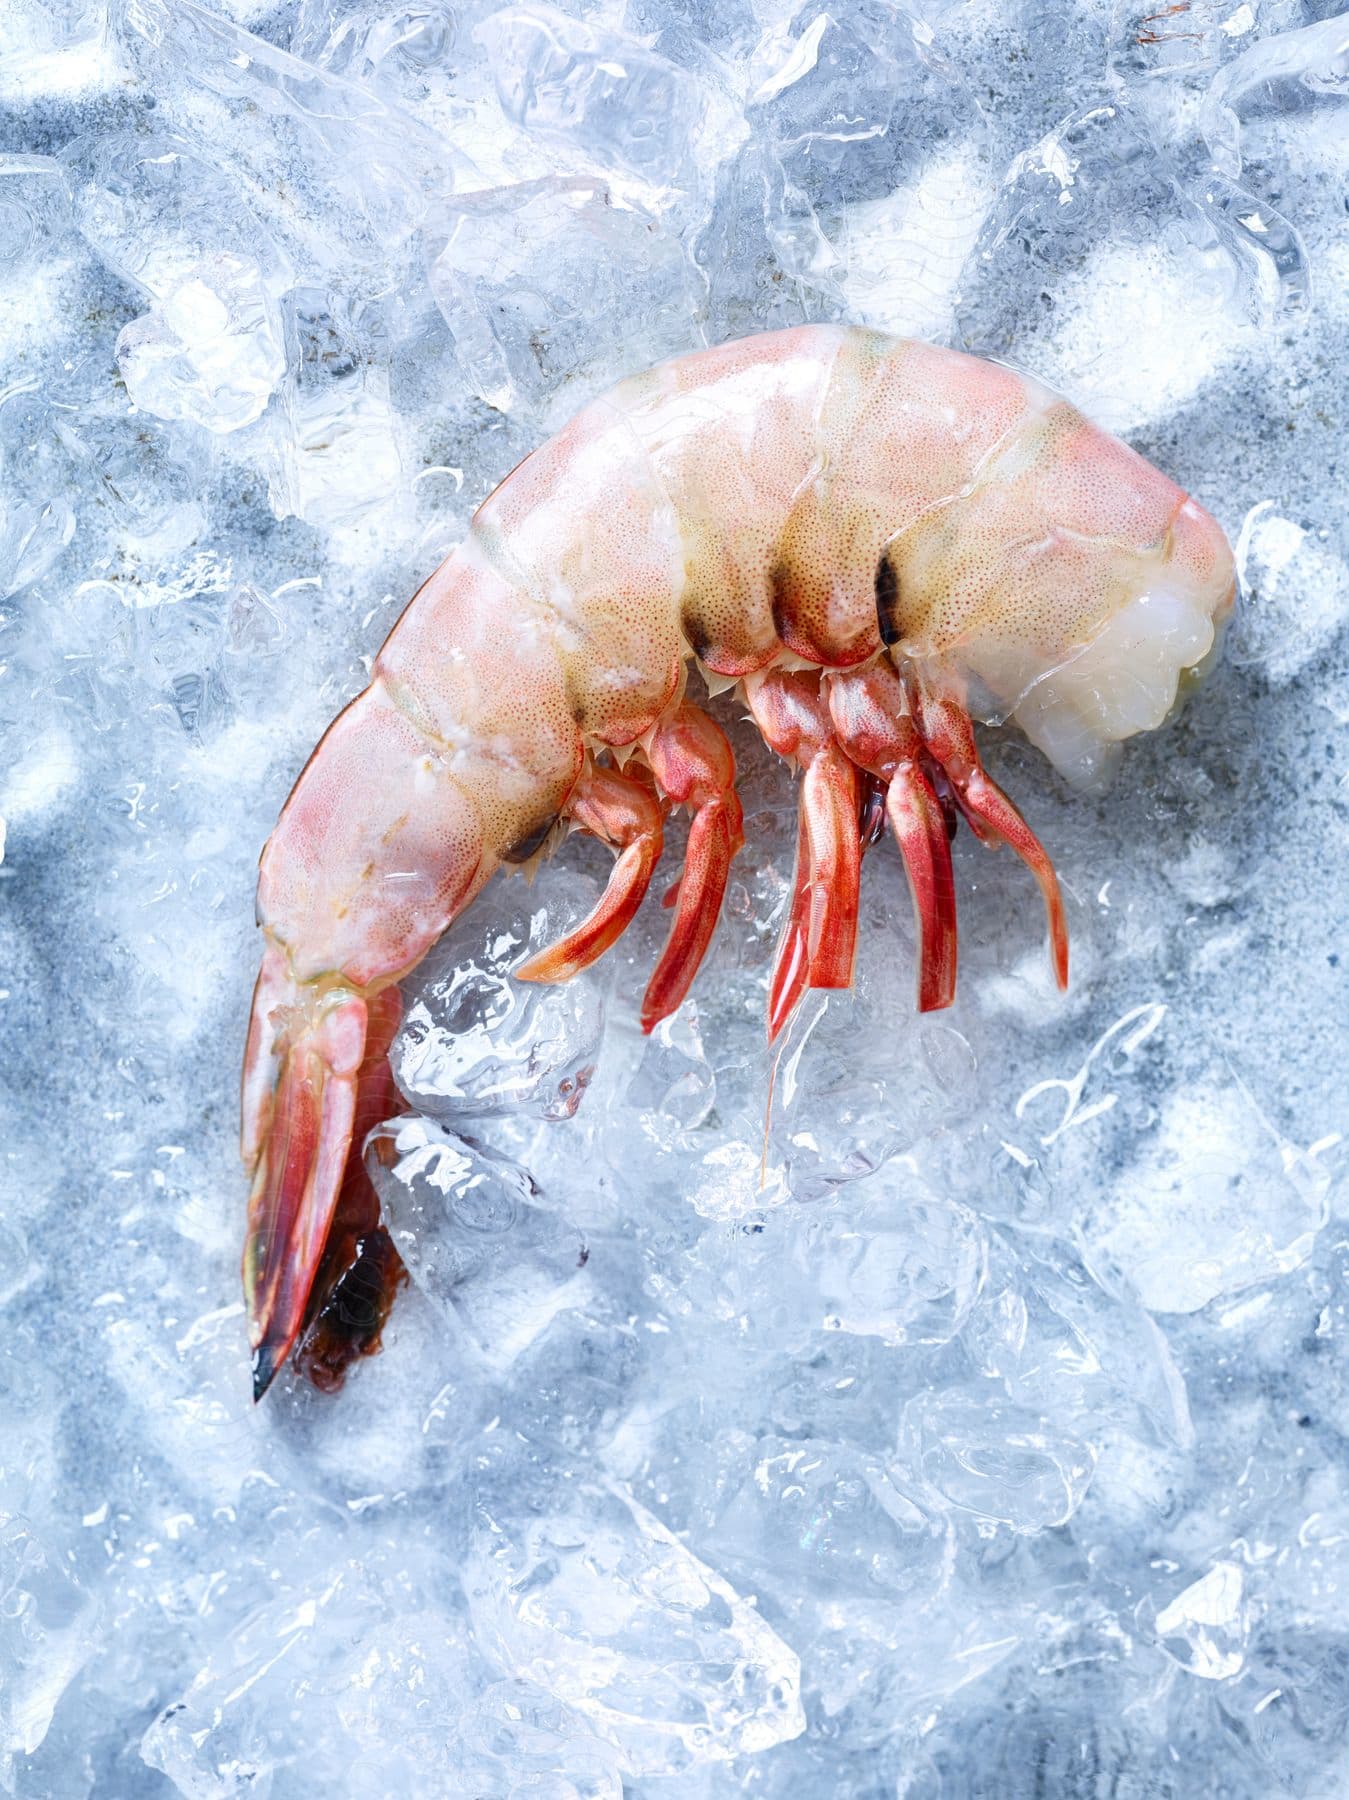 A shrimp on ice